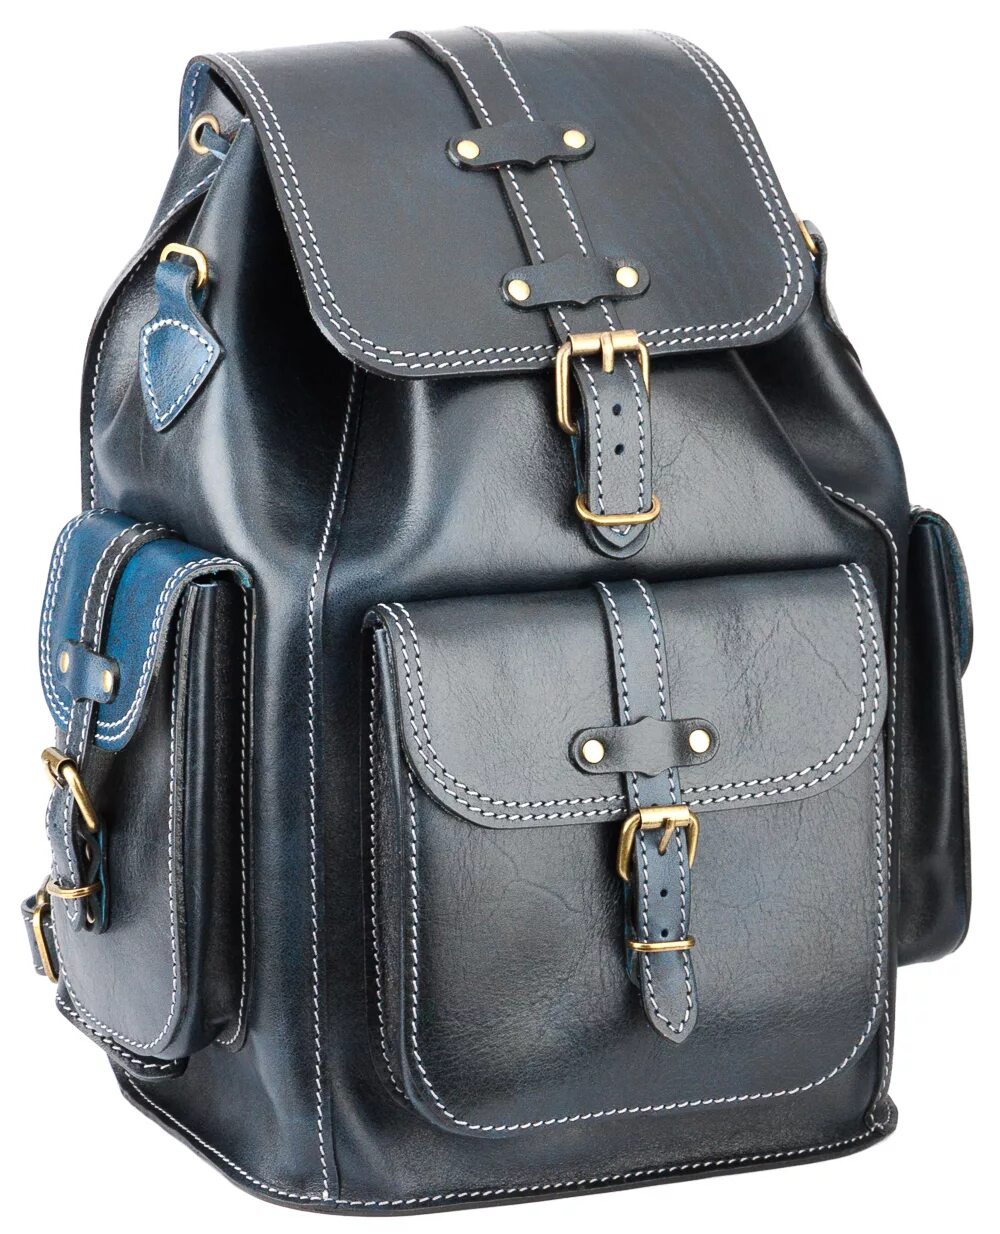 Кожаный рюкзак ранец мужской натуральная bp735. Кожаный рюкзак Mironidi. Рюкзак кожаный Marcello. Кожаный рюкзак Мустанг.